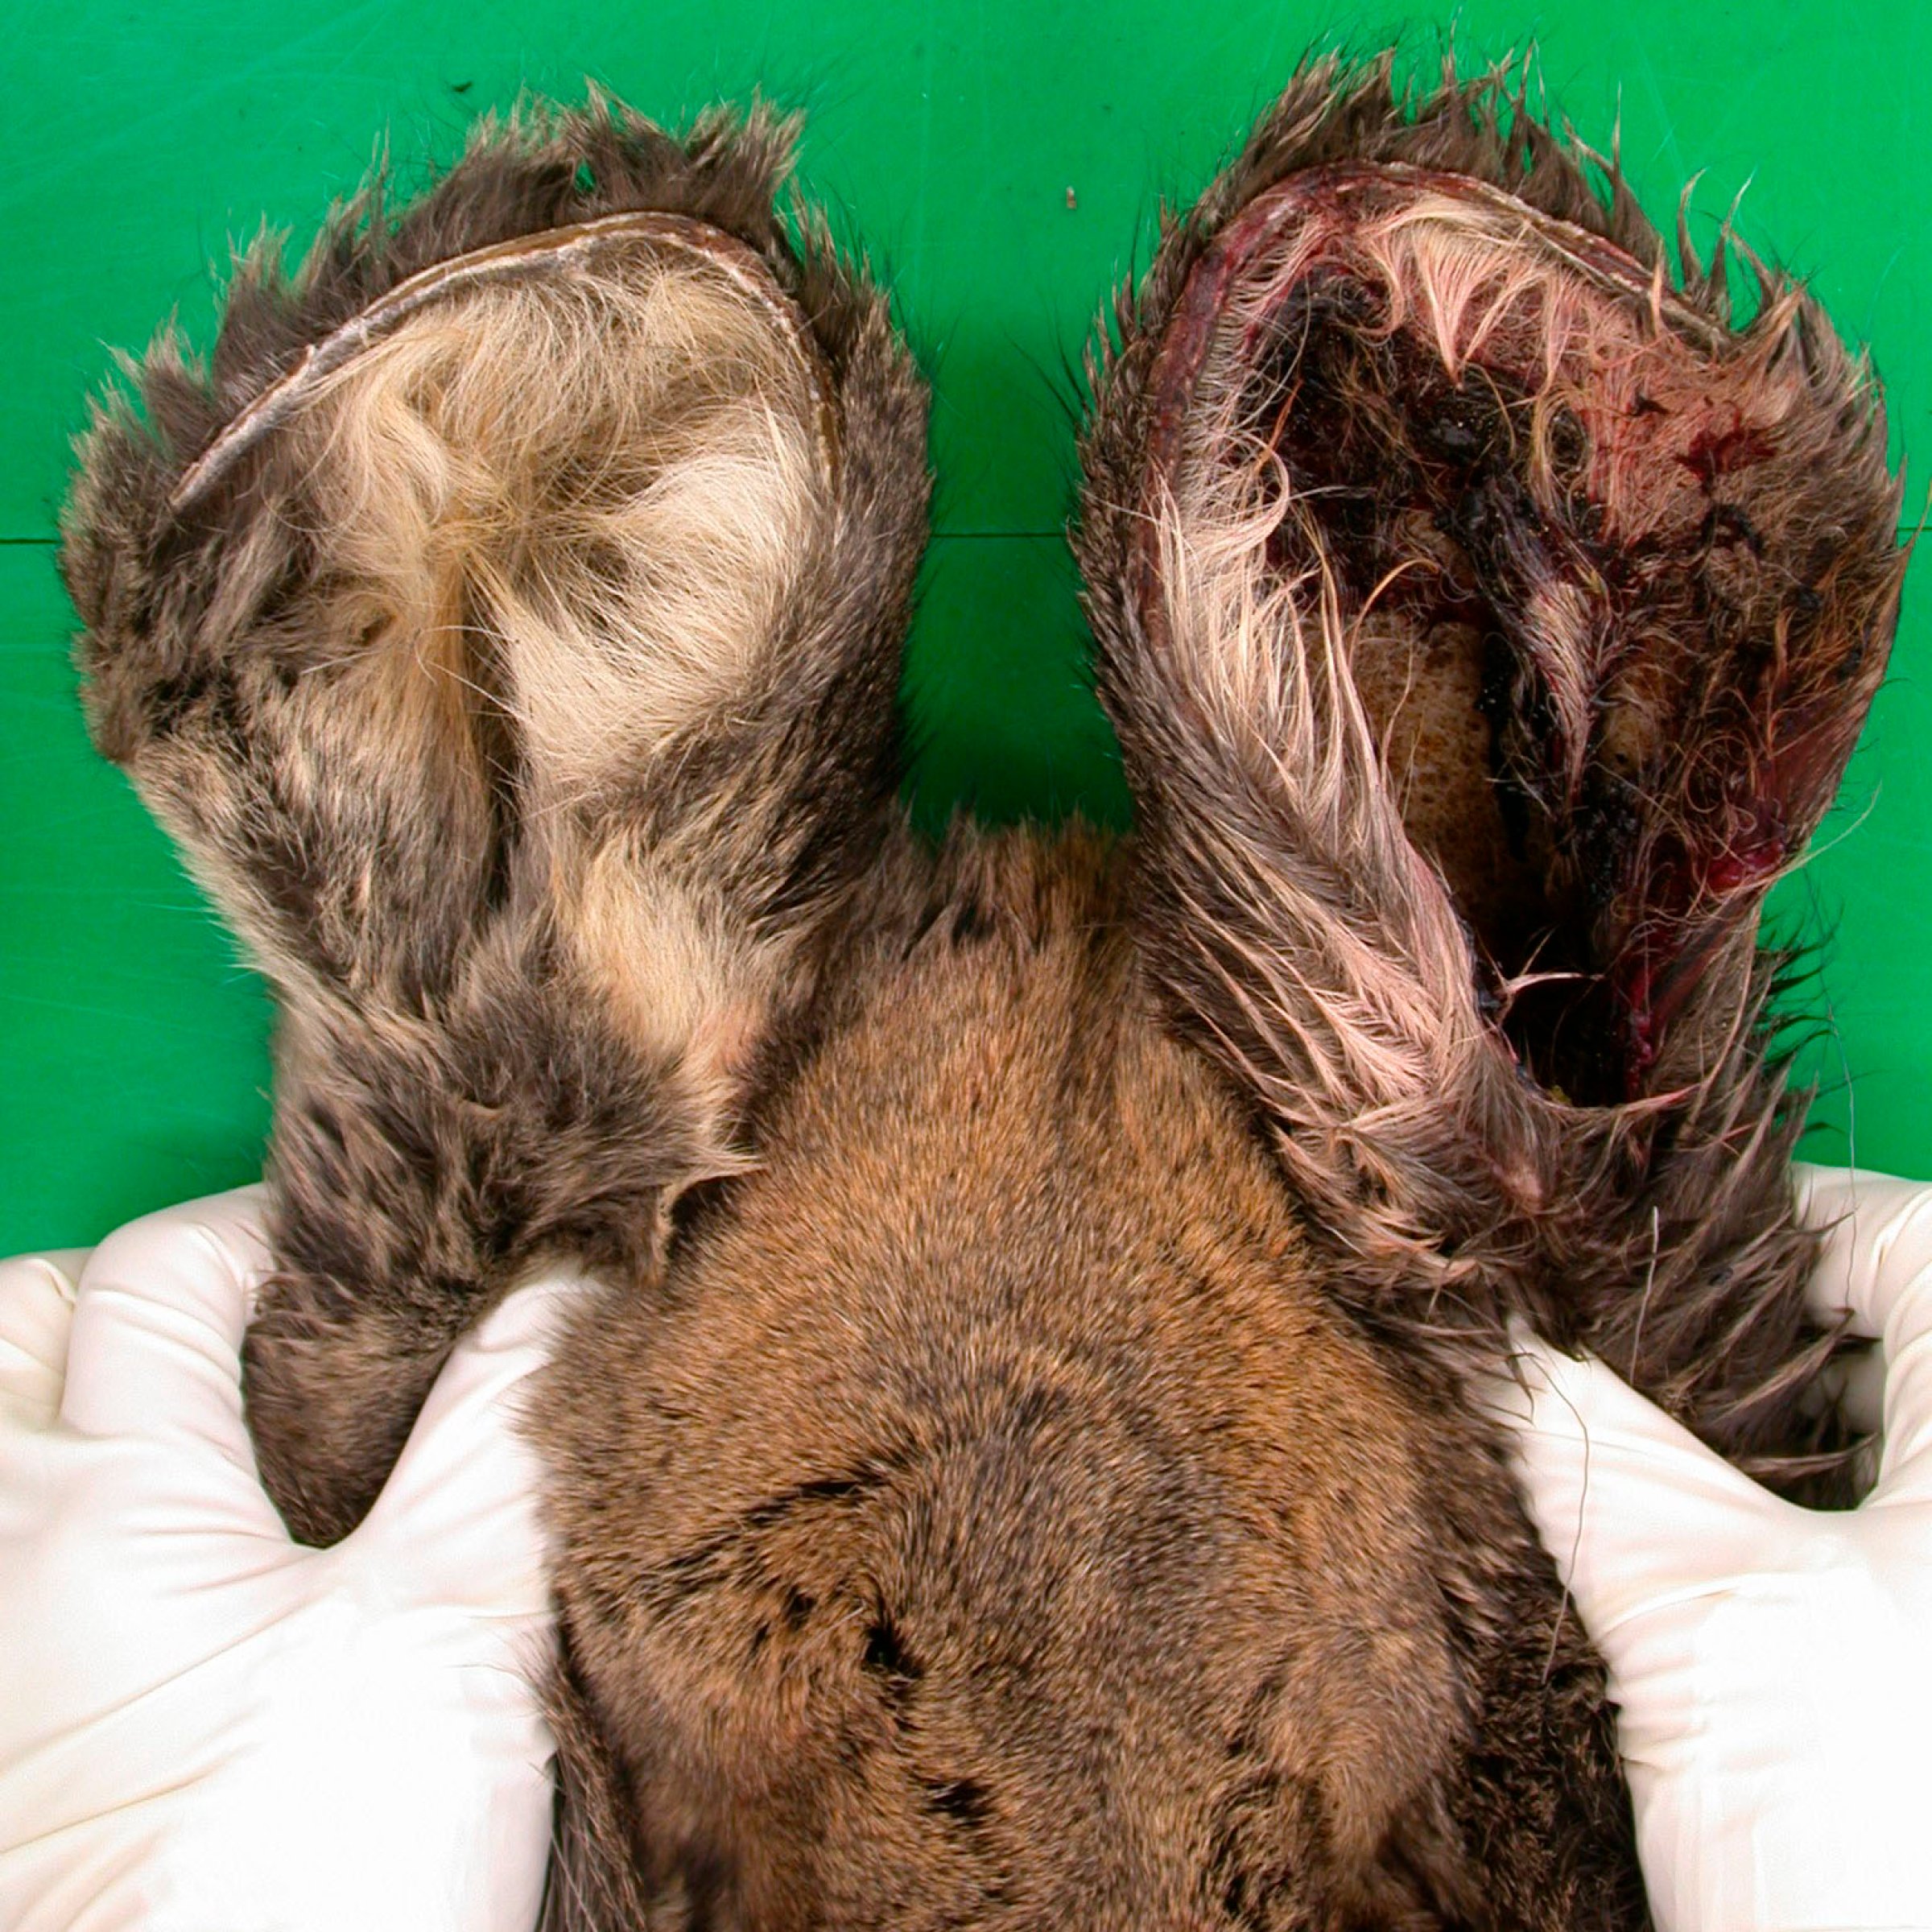 Bilde 3. Koldbrann på ytre del av ørene hos elgkalv (samme individ som bilde 1). Foto: Veterinærinstituttet